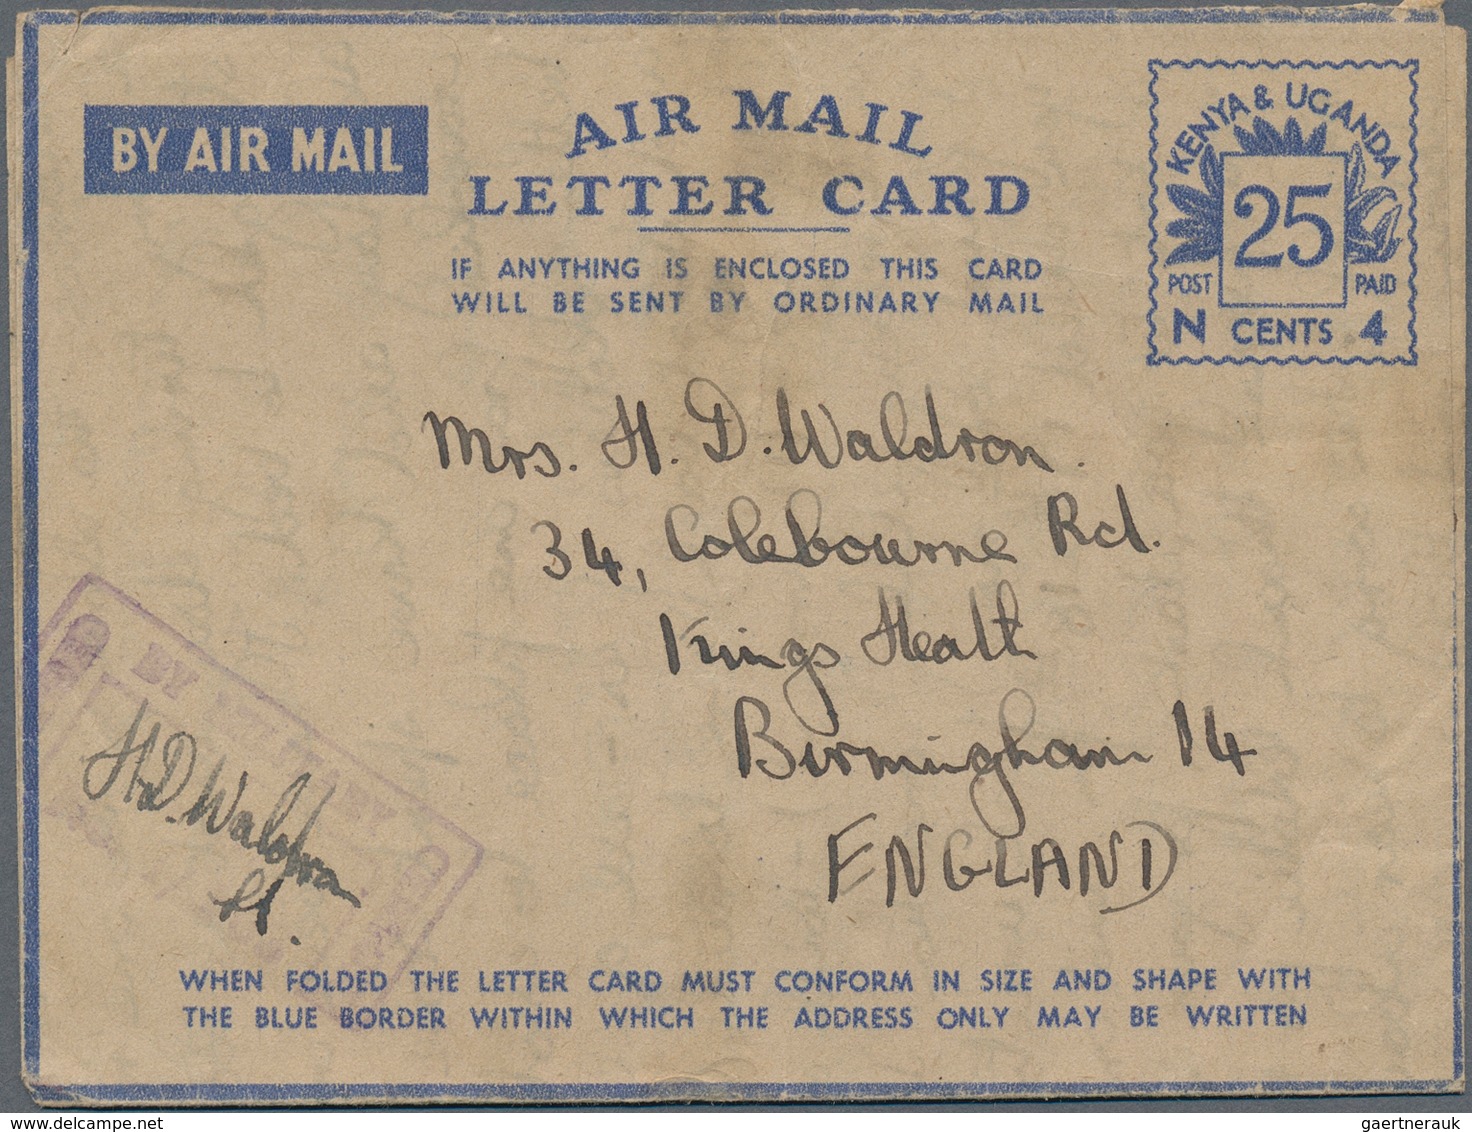 Ostafrikanische Gemeinschaft: 1944, Air Mail Letter cards with blue value tablet "25 CENTS / N 4", a